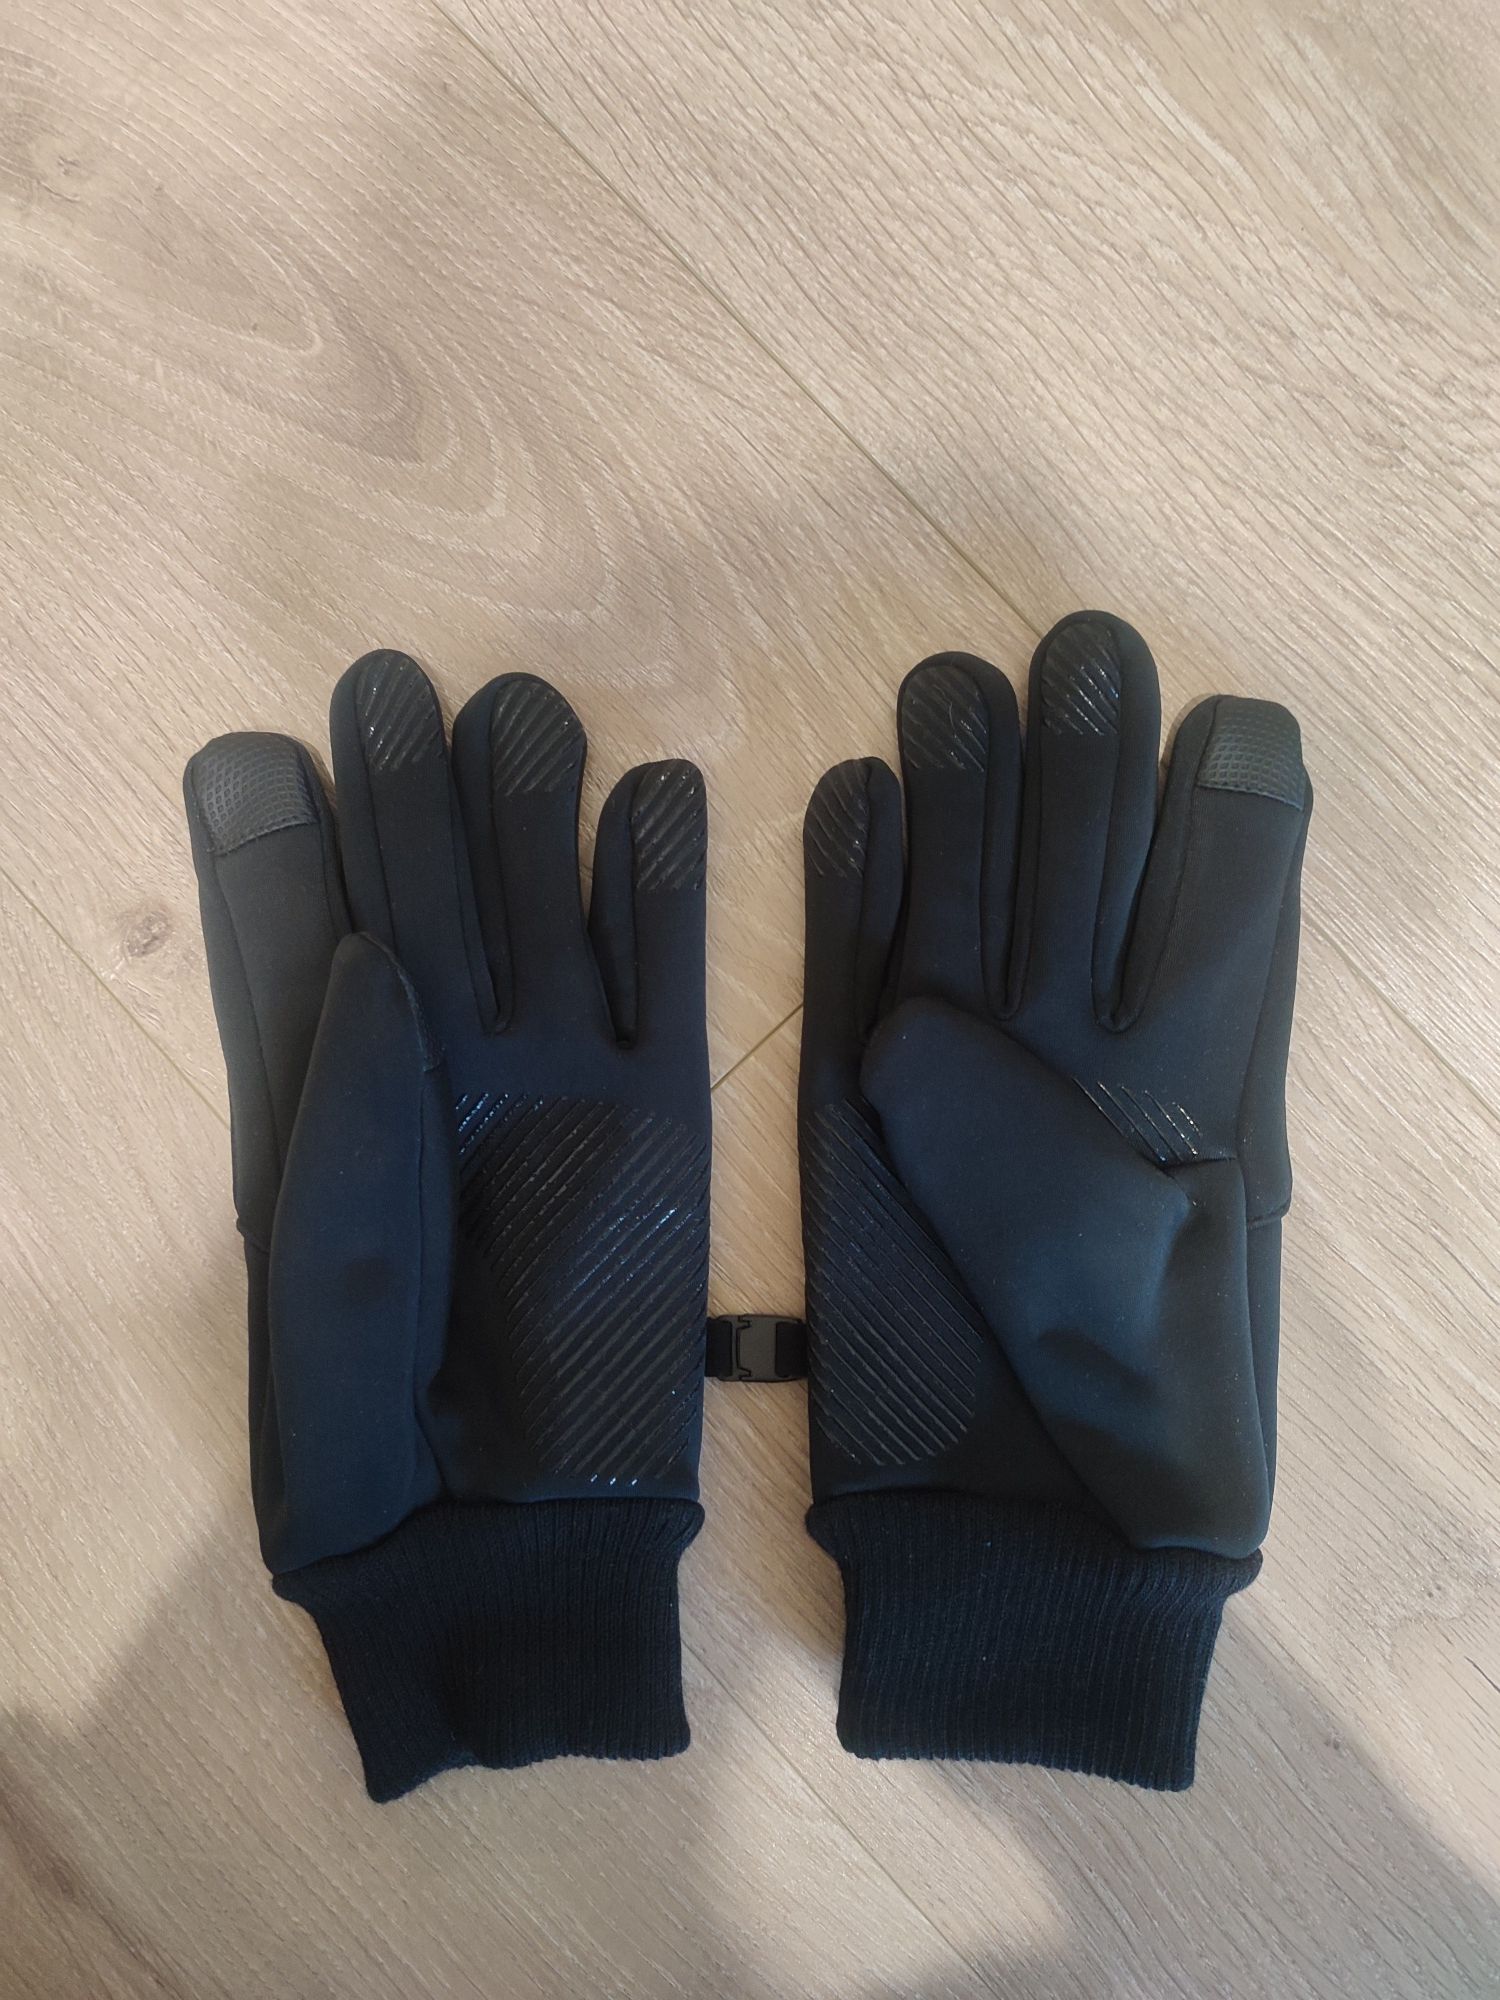 Рукавиці (перчатки)Sport осінь-зима